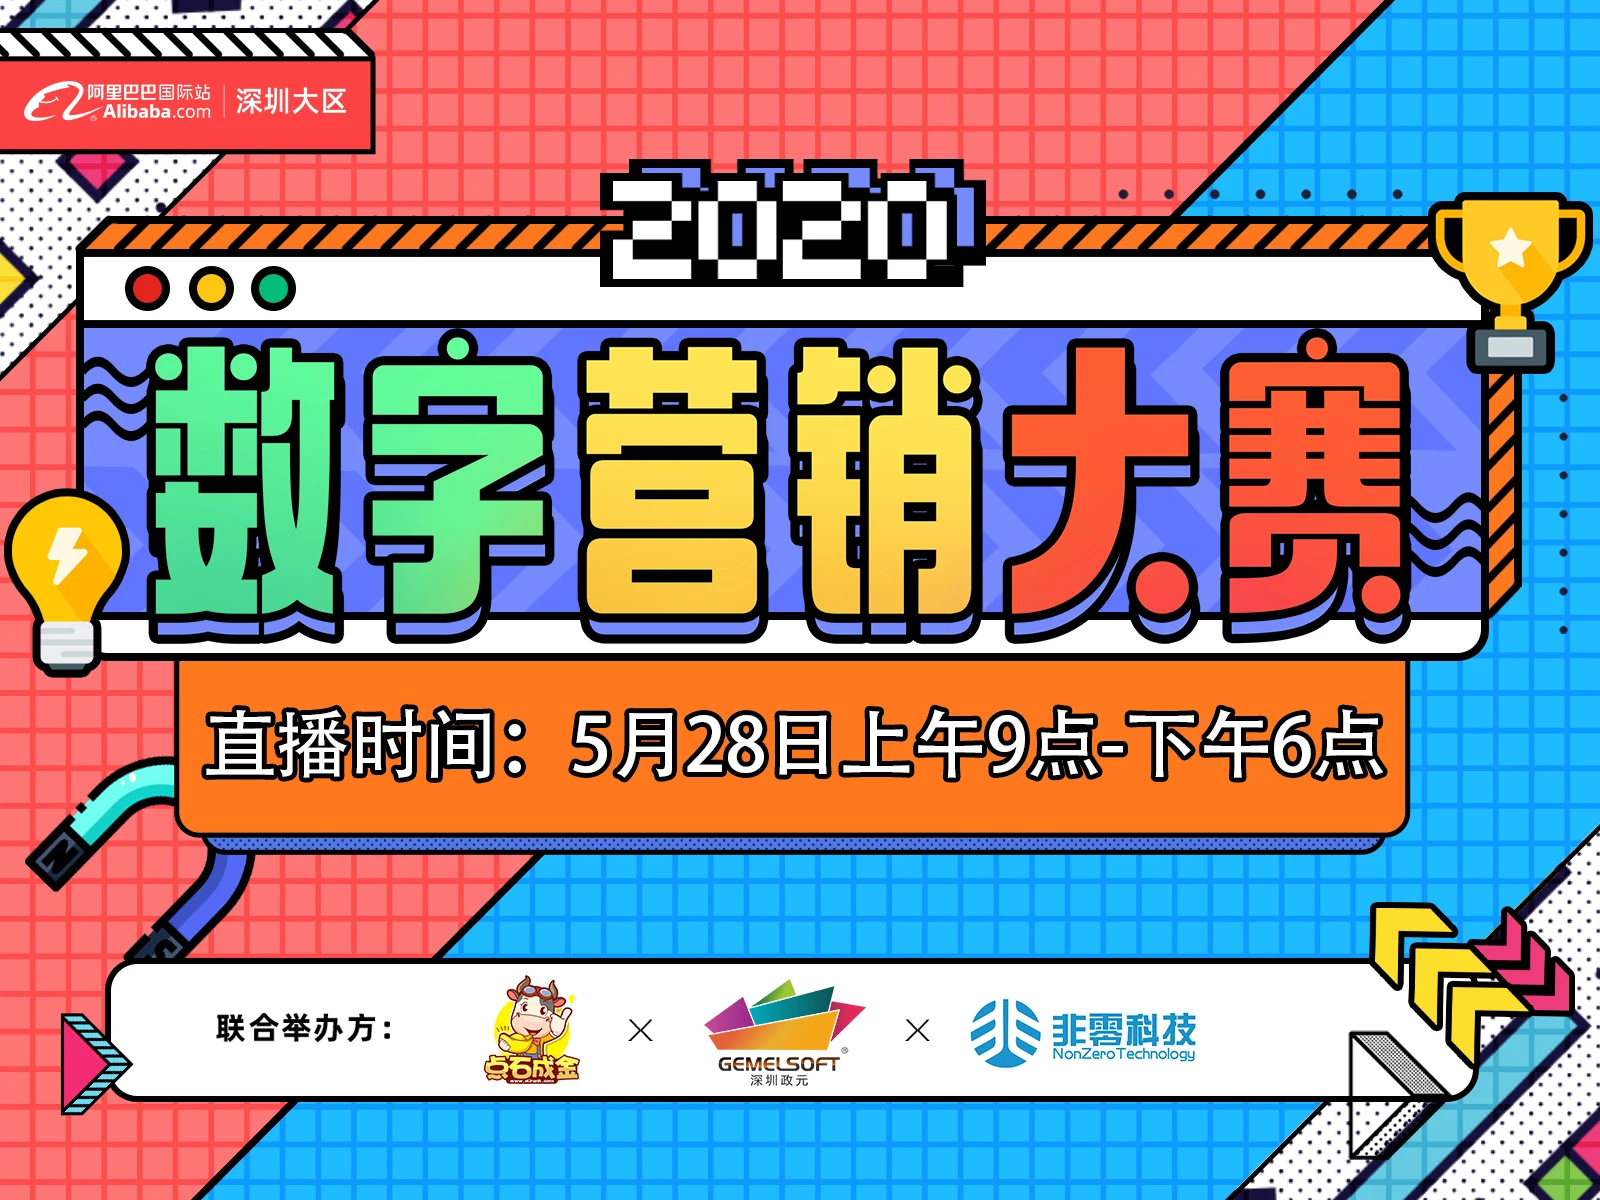 【2020数字营销大赛】深圳大区 东莞区域决赛